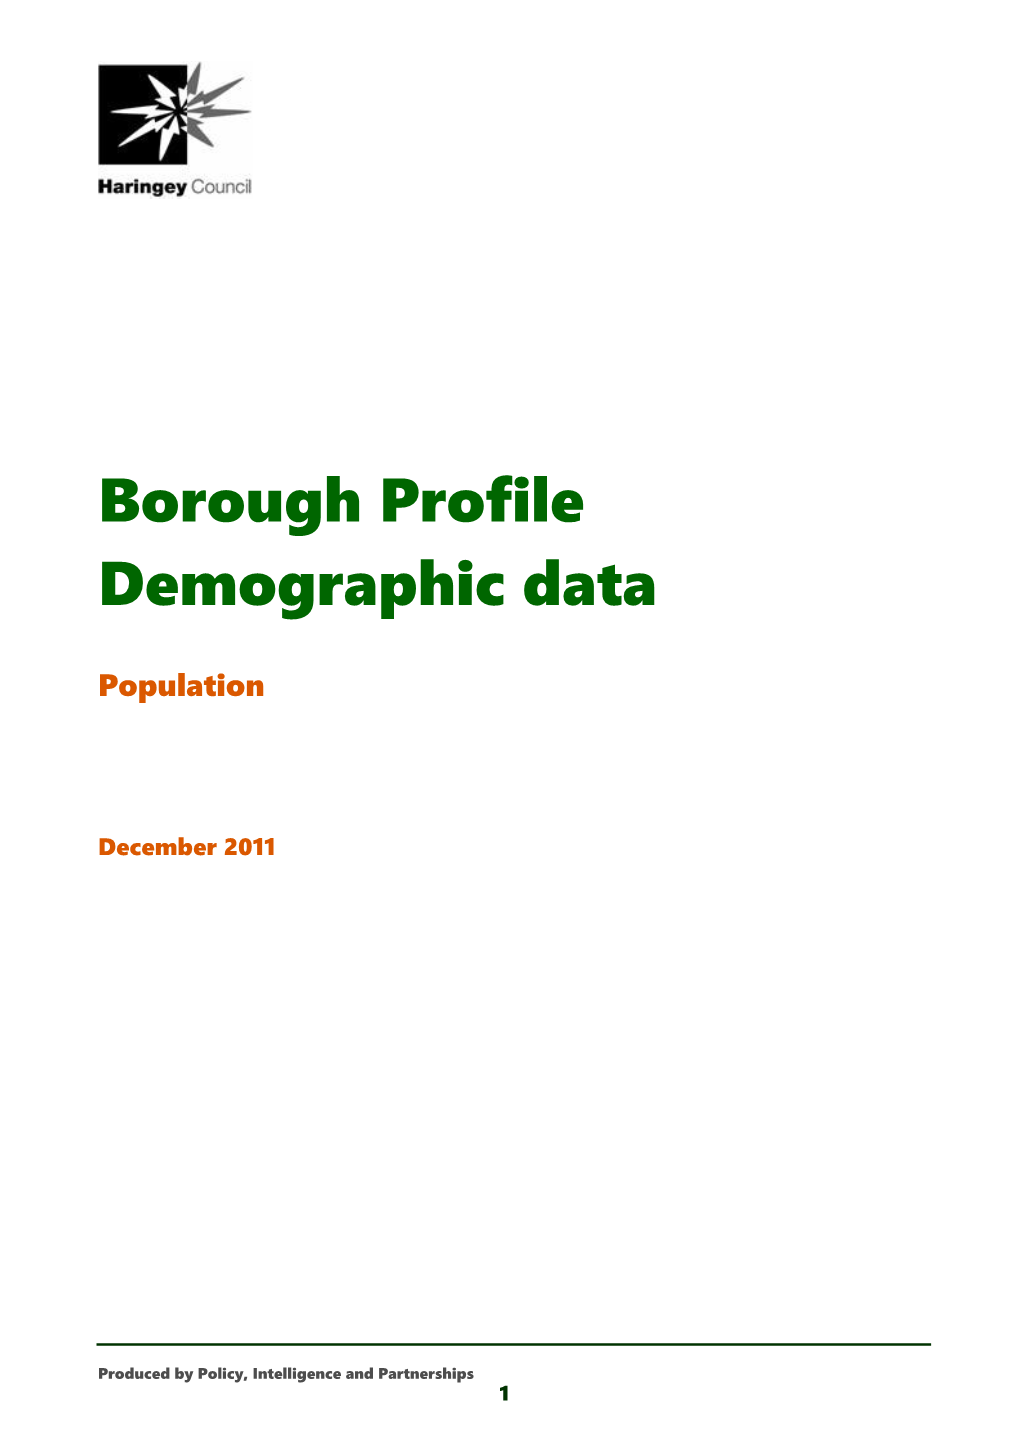 Borough Profile Demographic Data